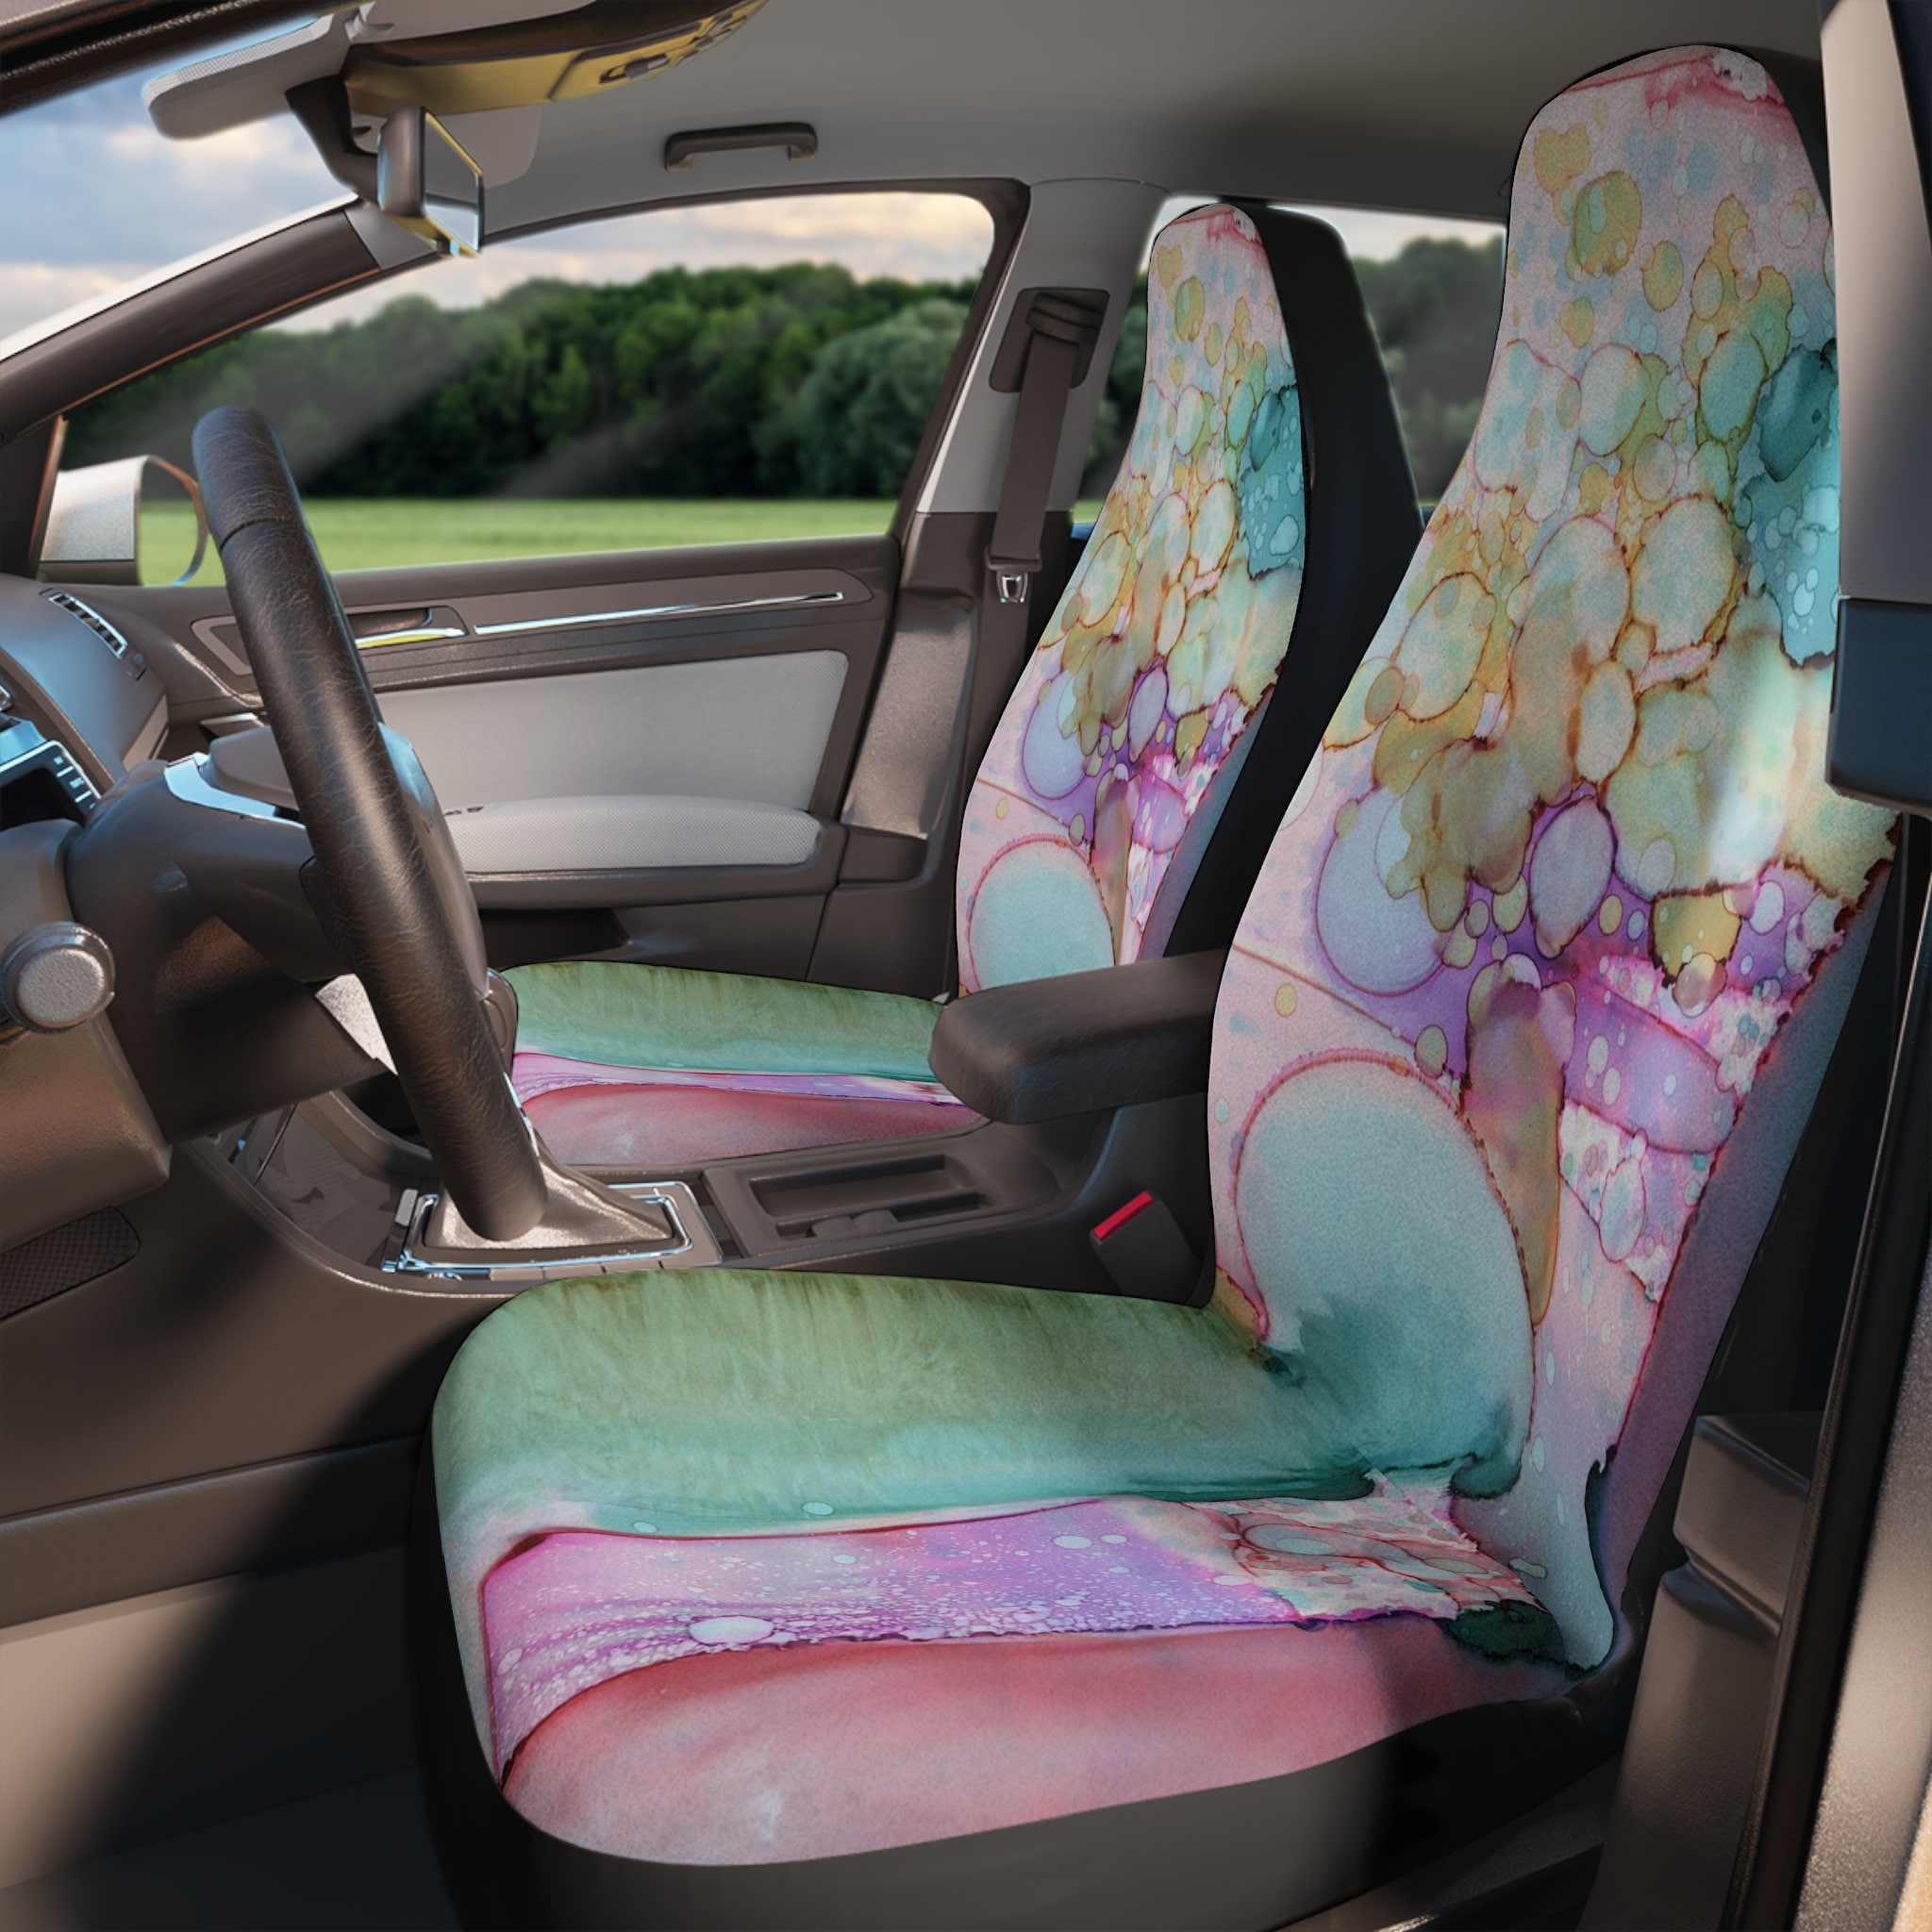 Pzuqiu Hippie Mushroom Car Accessories Back Seat Cover for Women